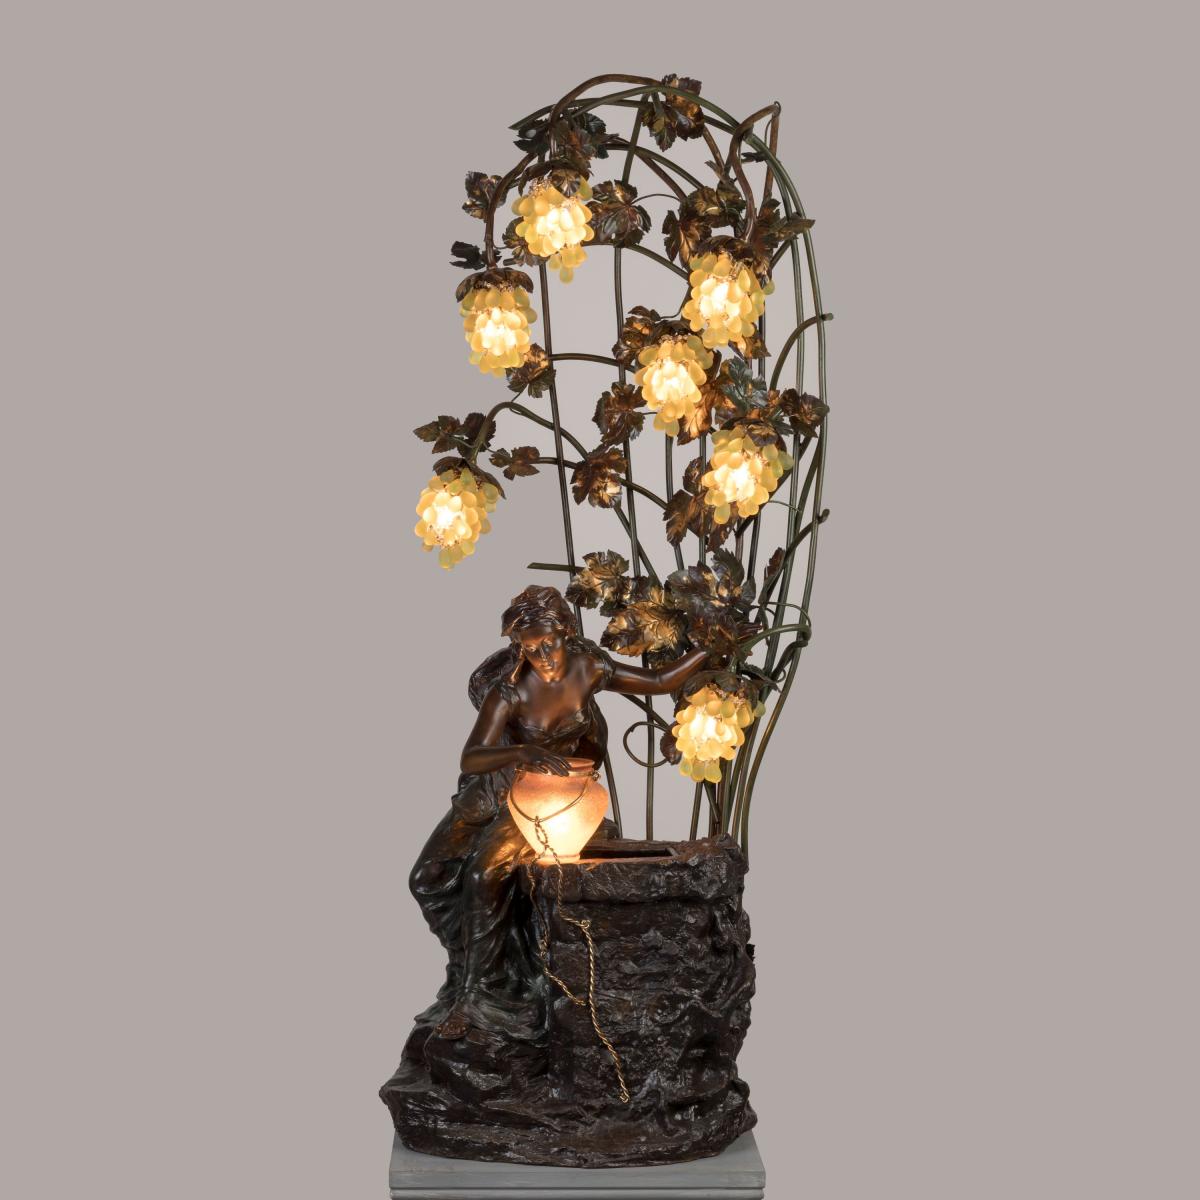 A Large Art Nouveau Figural Lamp By Luigi Betti